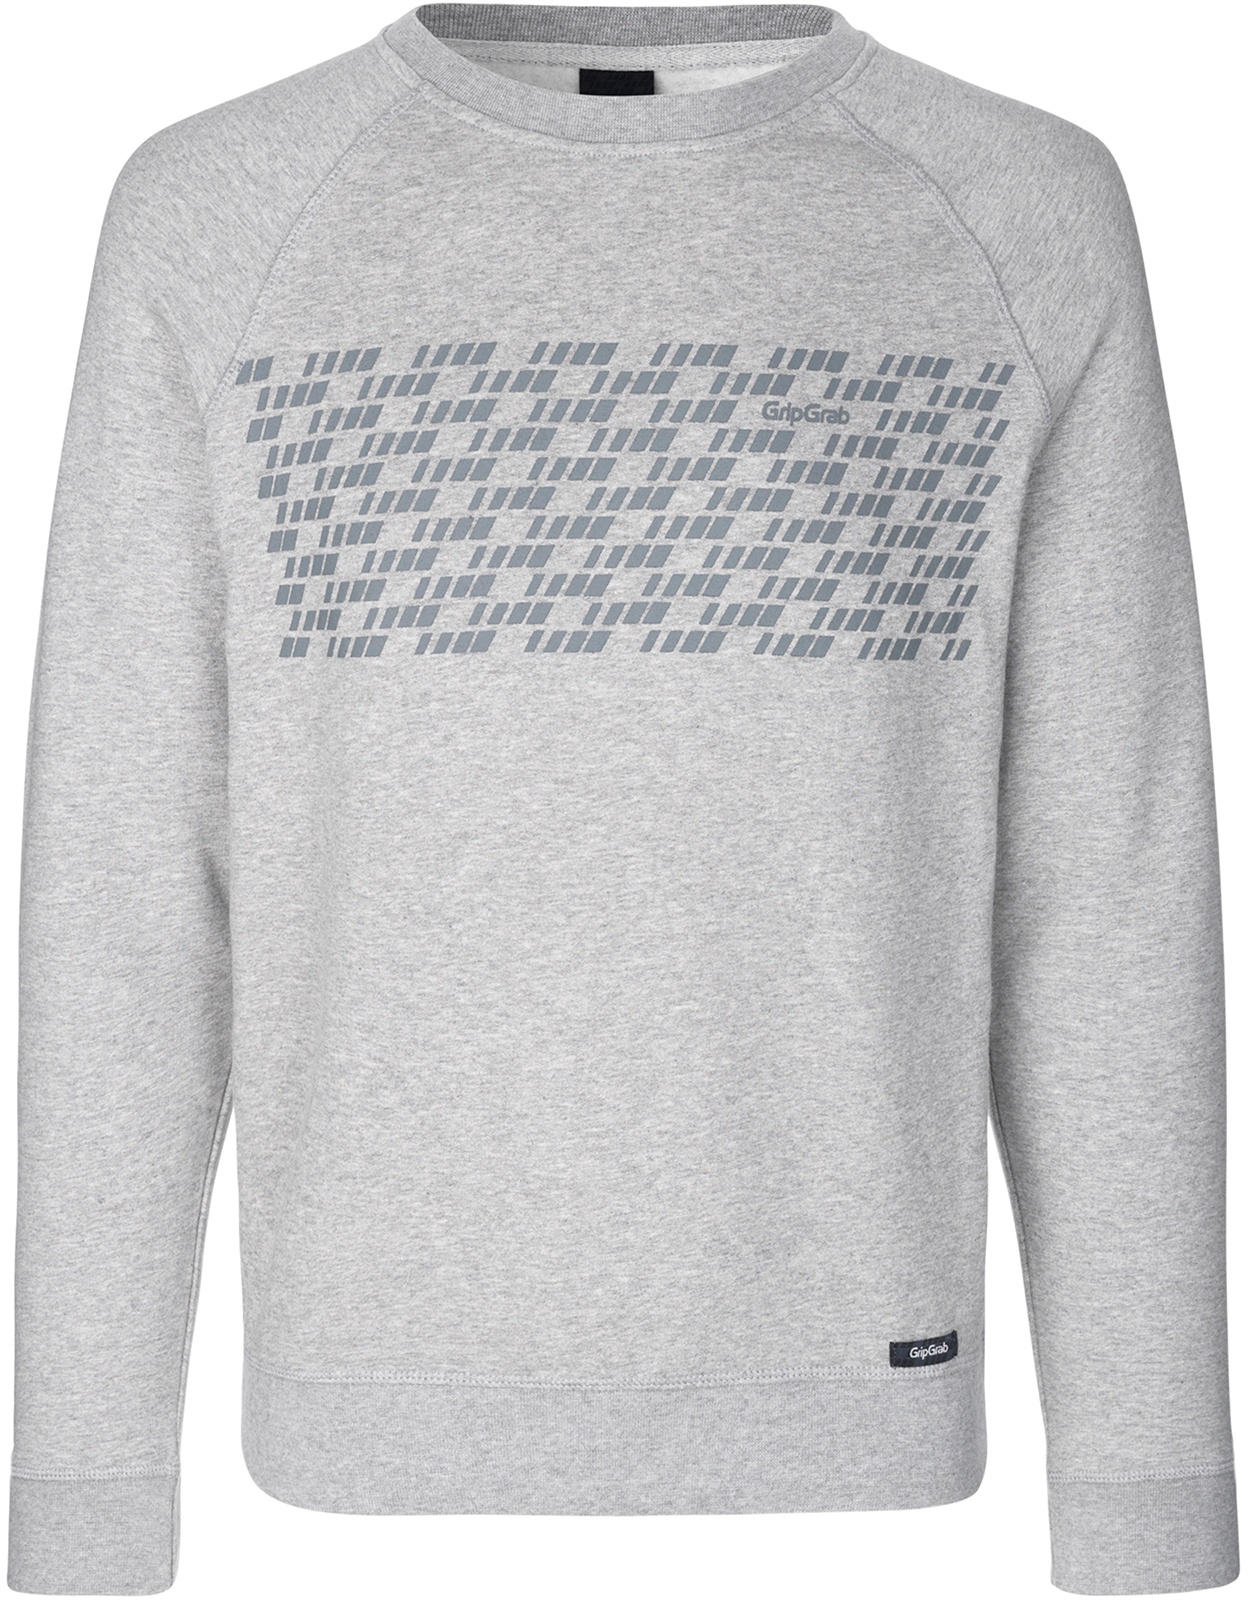 Beklædning - Merchandise - GripGrab 5th Element Langærmet Økologisk Bomuldssweatshirt - Grå